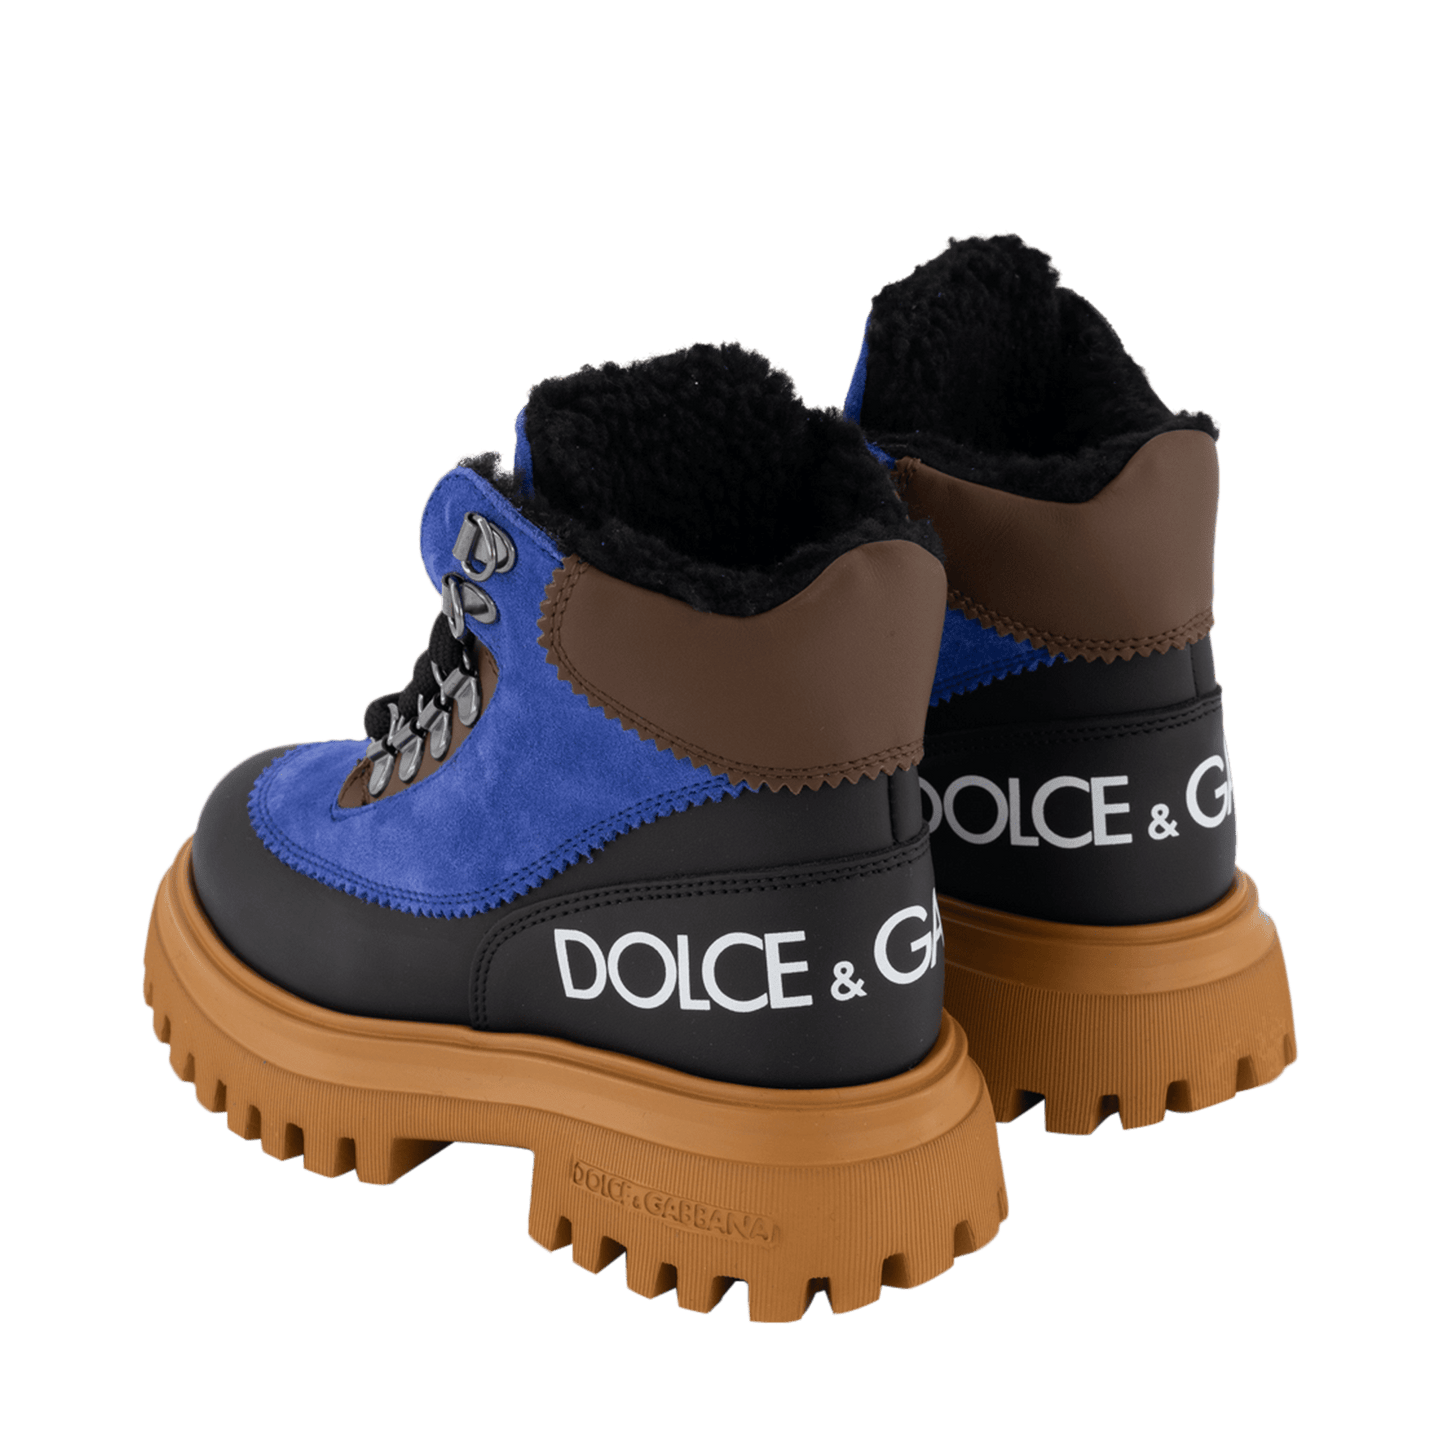 Dolce & Gabbana Kinder Jongens Laarzen Blauw 27